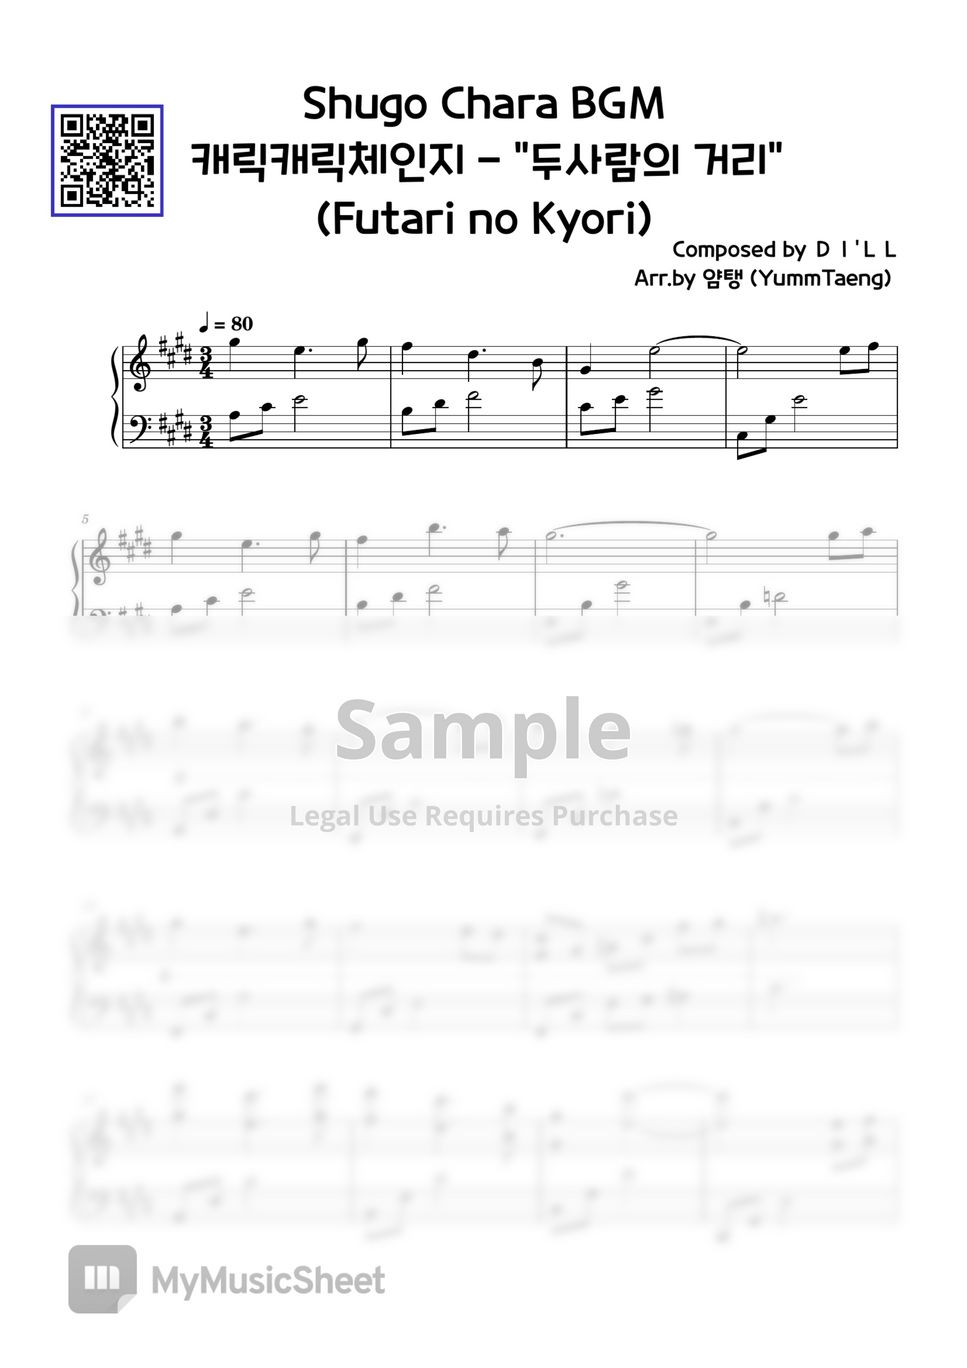 Shugo Chara! - Futari no Kyori by yummtaeng